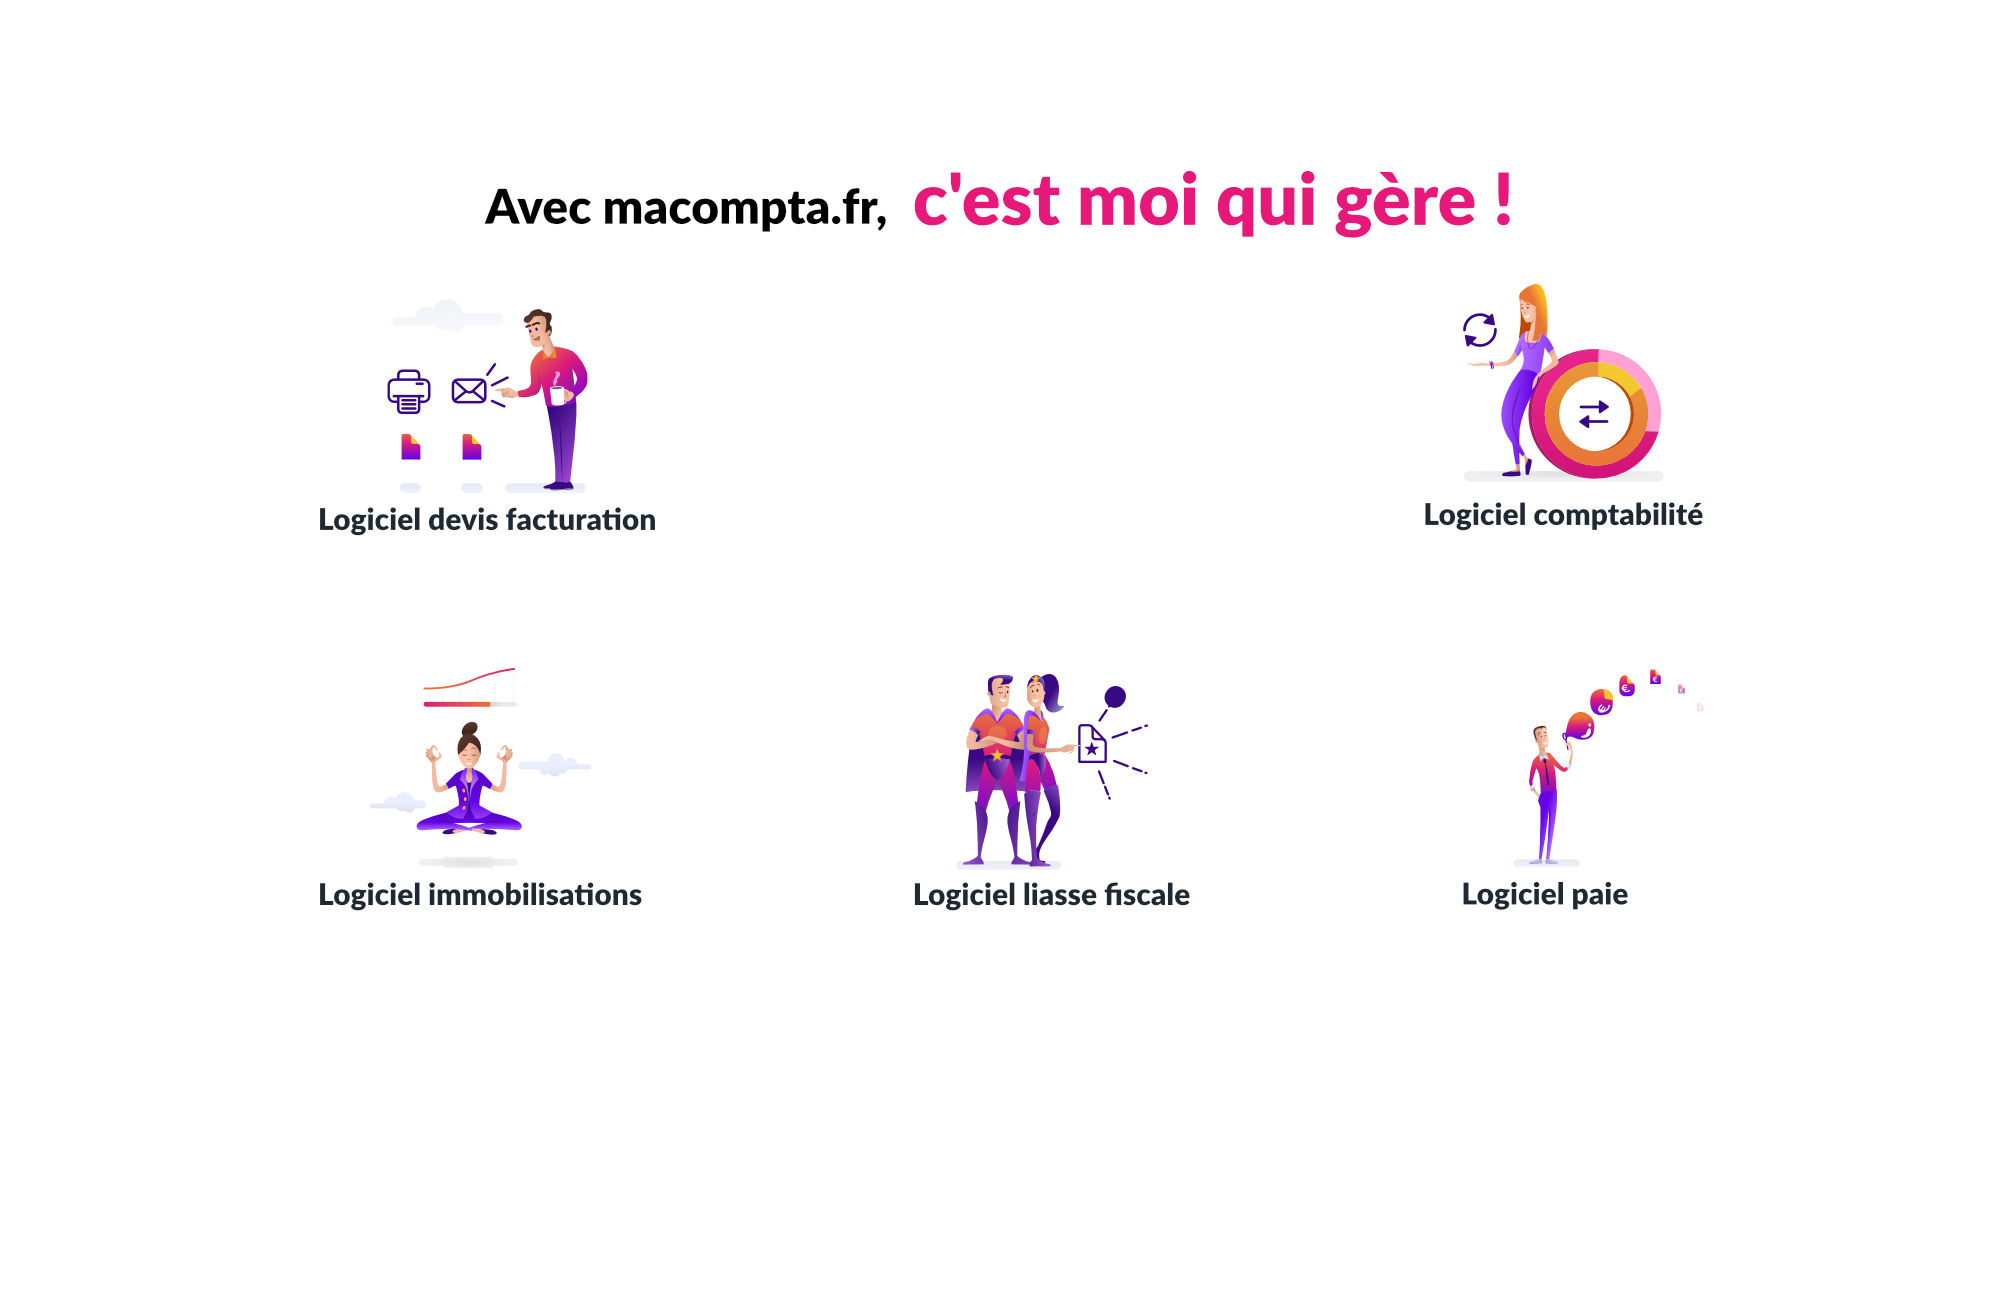 Image de fond de la page d'accueil du blog de macompta.fr